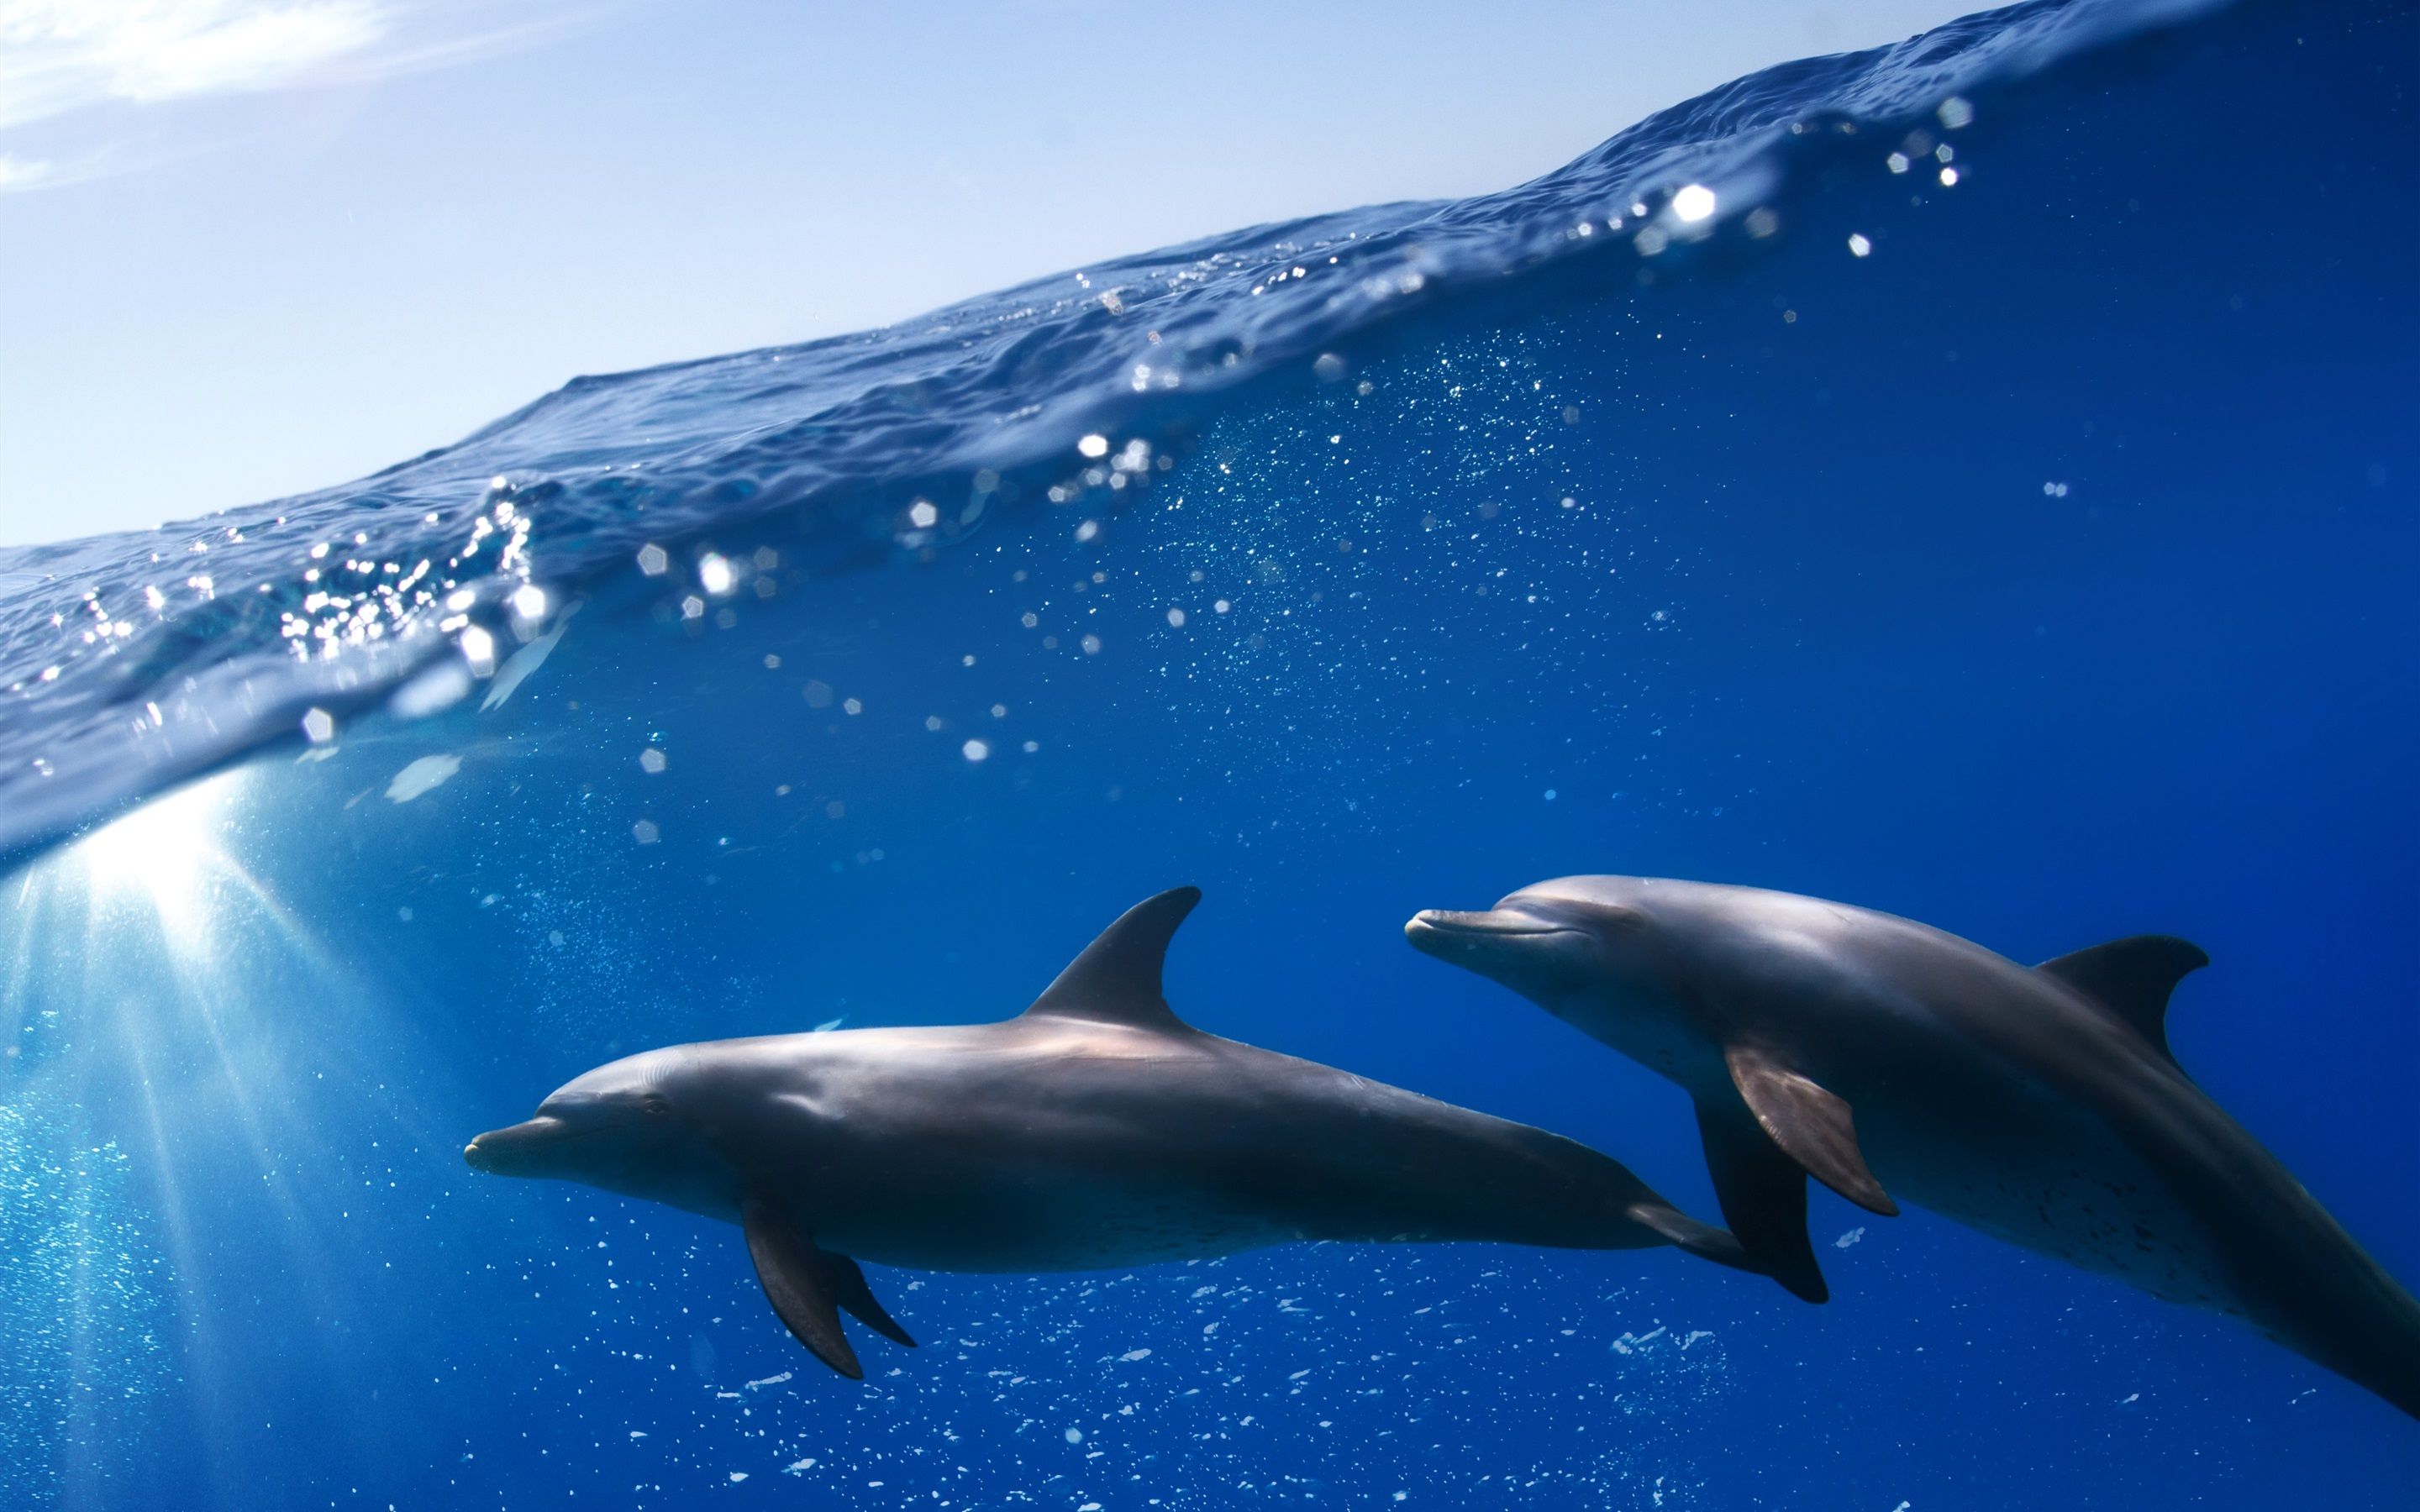  Delfine Hintergrundbild 2880x1800. Unterwasser, zwei Delfine, blaues Meer 2880x1800 HD Hintergrundbilder, HD, Bild